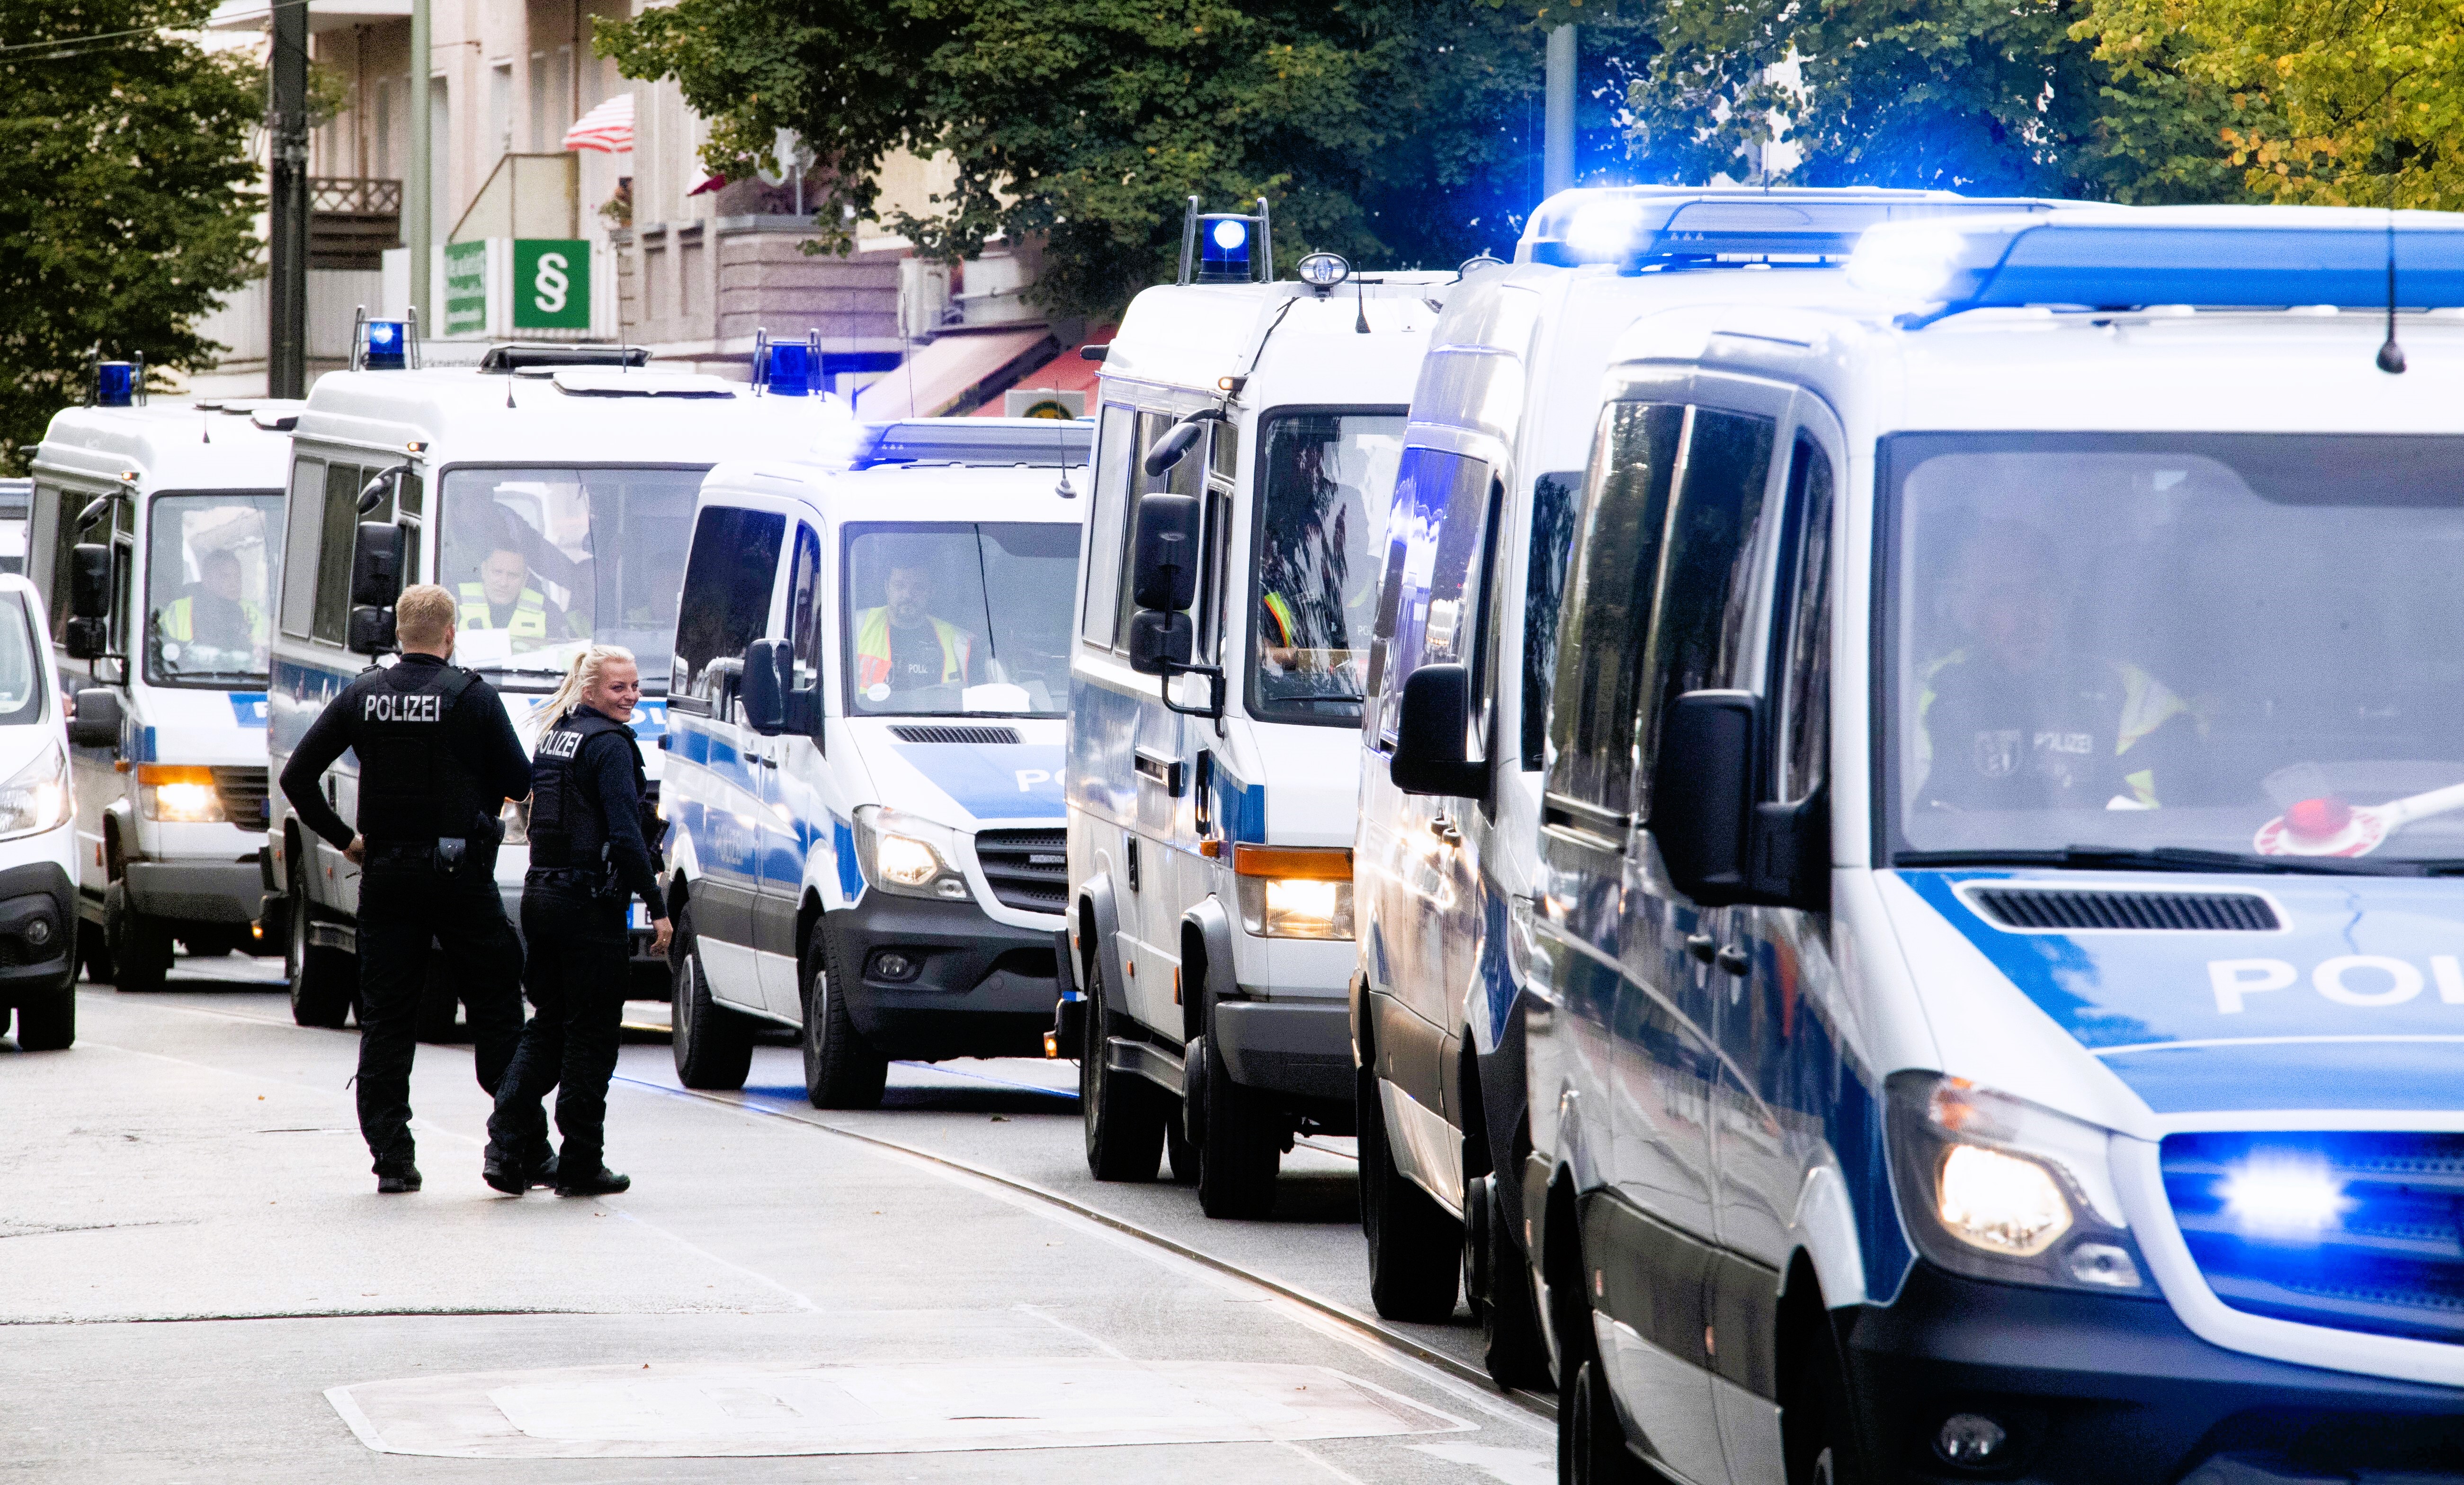 Geiselnahme in Aachener Krankenhaus! Bewaffneter Mann dringt in Klinik ein - Polizei sperrt alles ab